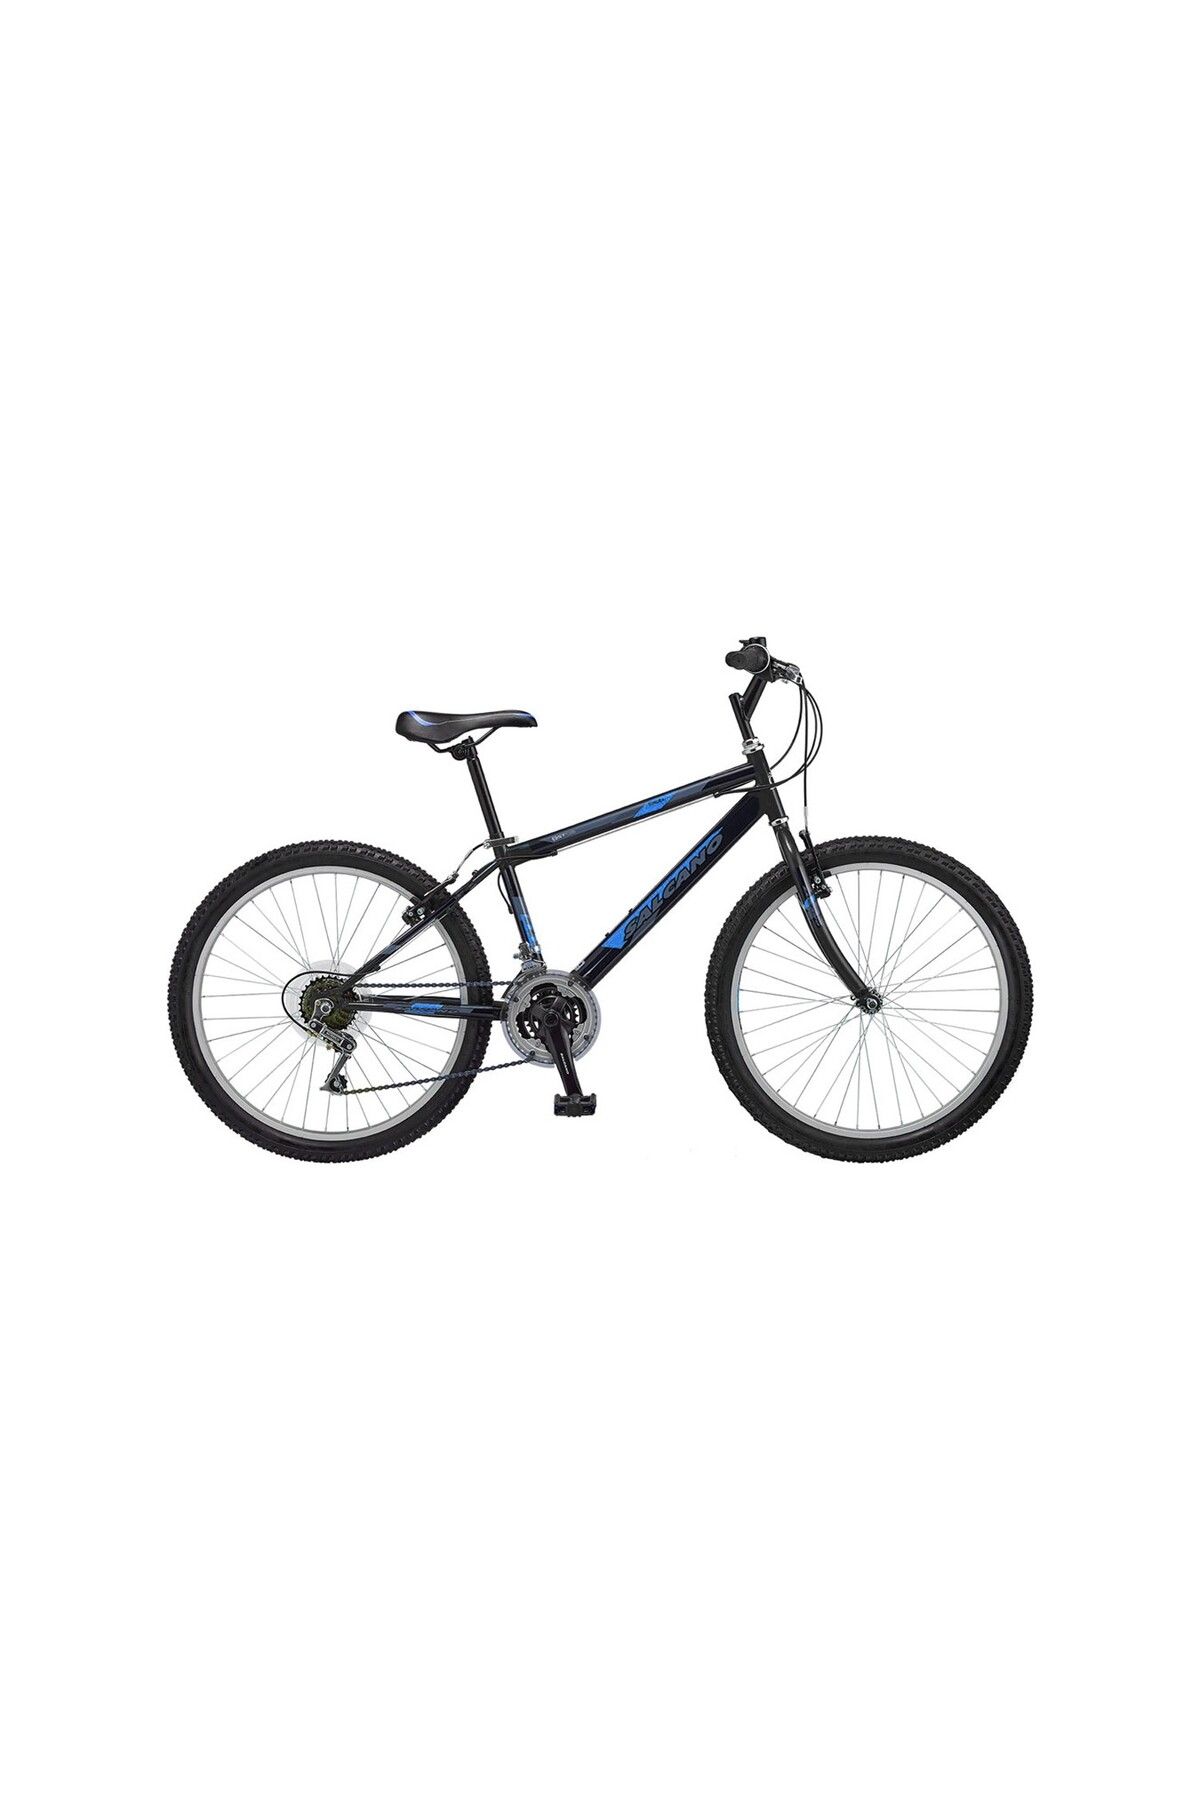 Salcano Excel 24 jant 21 vites çocuk bisikleti 21 Vites siyah mavi